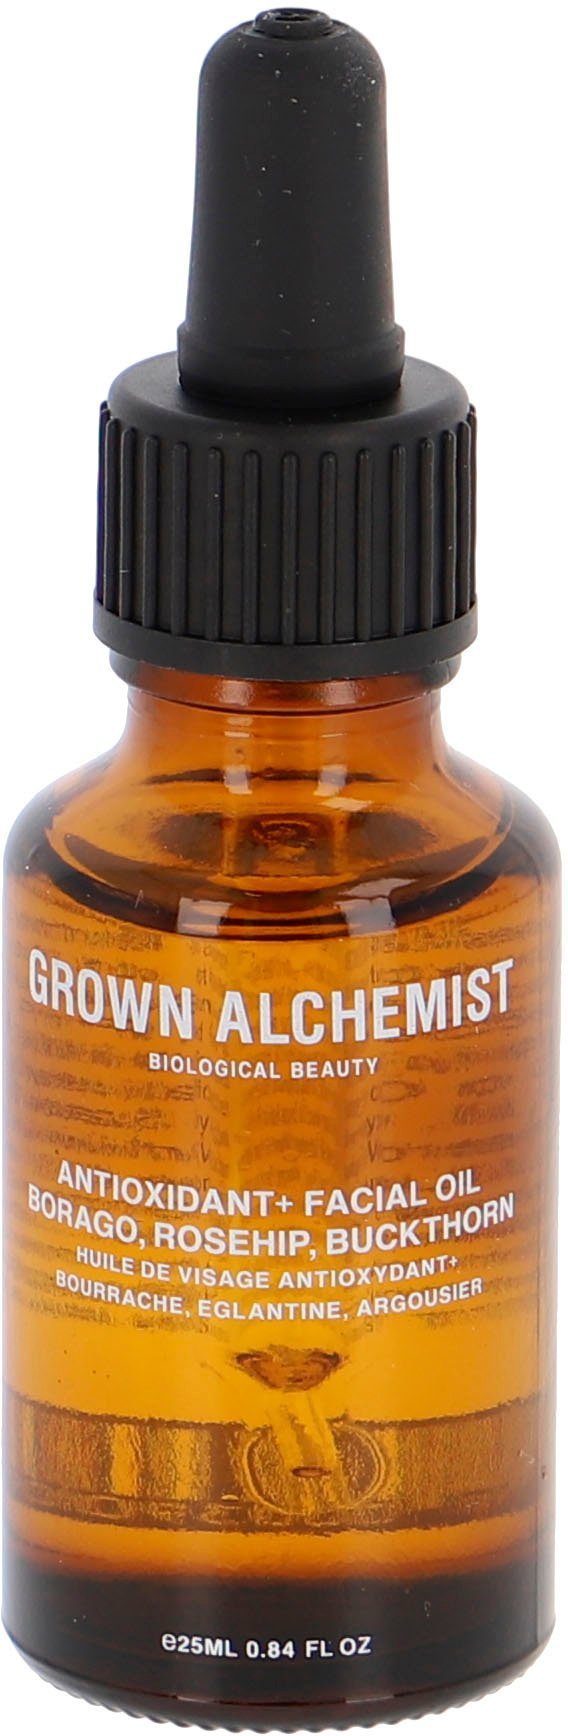 GROWN ALCHEMIST Gesichtsöl Anti-Oxidant+ Facial Oil, Borago, Rosehip,  Buckthorn, bekämpft den natürlichen Alterungsprozess